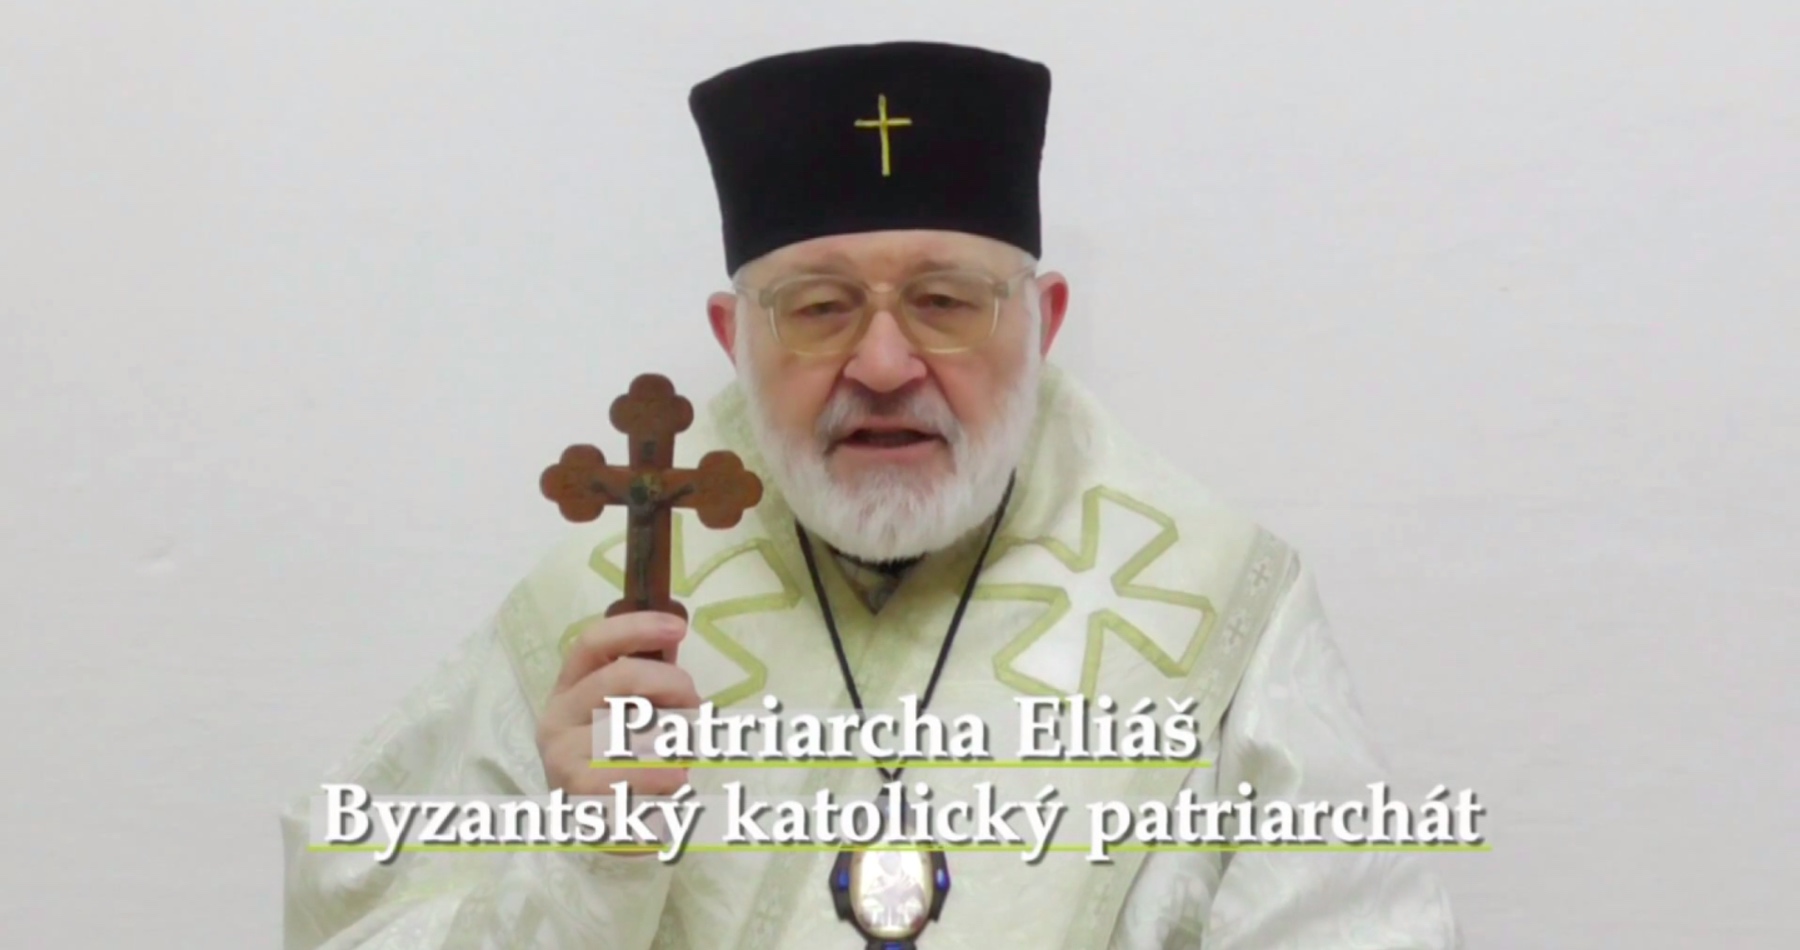 VIDEO: Patriarcha Byzantského katolického patriarchátu Eliáš o exkomunikaci Lžipapeže Františka Bergoglia za prosazování vakcinačního mRNA antievangelia